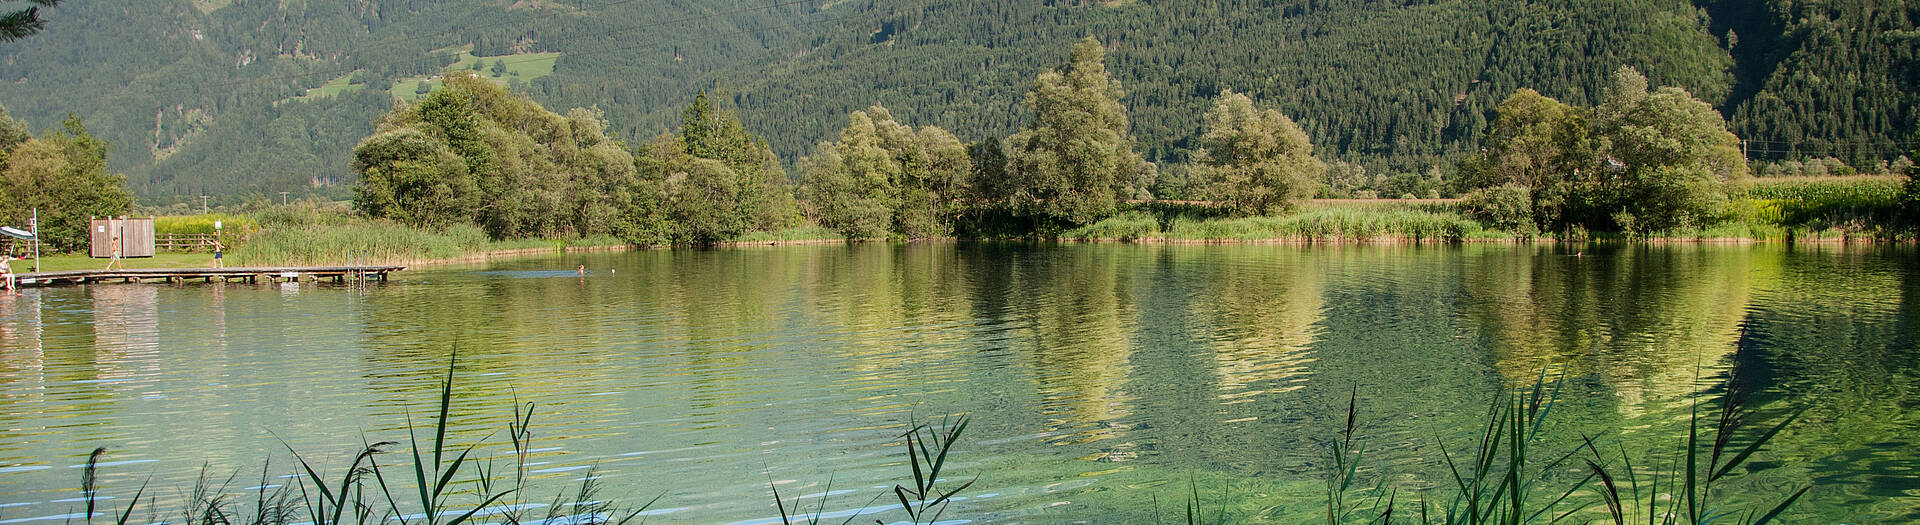 Kleblach-Lind in der Nationalpark-Region Hohe Tauern